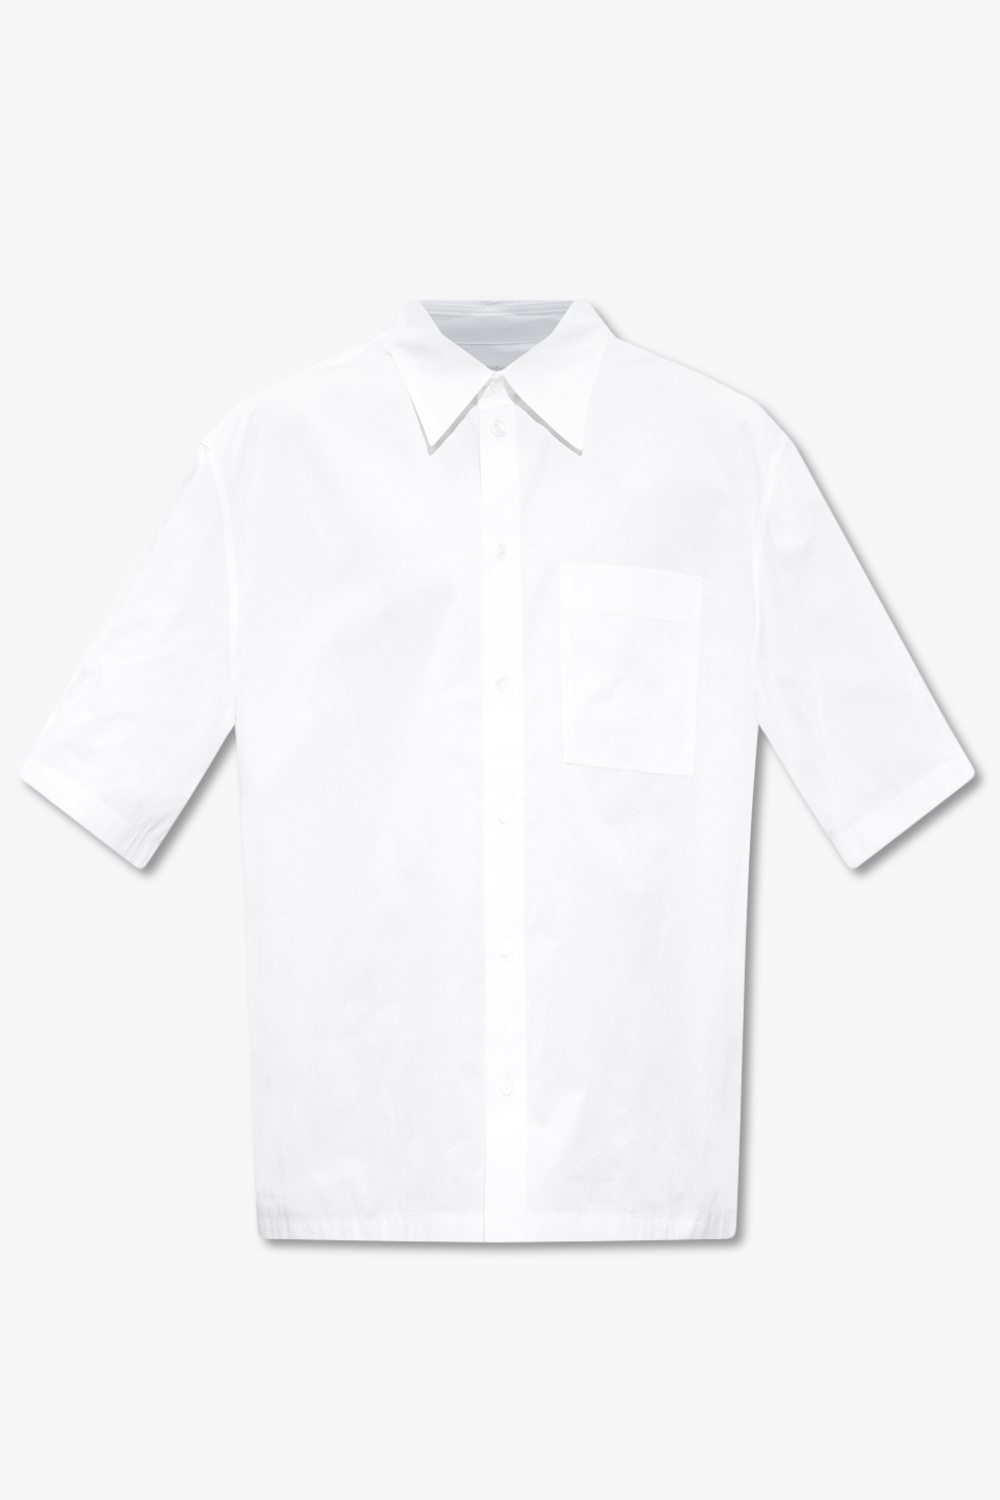 Bottega Veneta Shirt with short sleeves